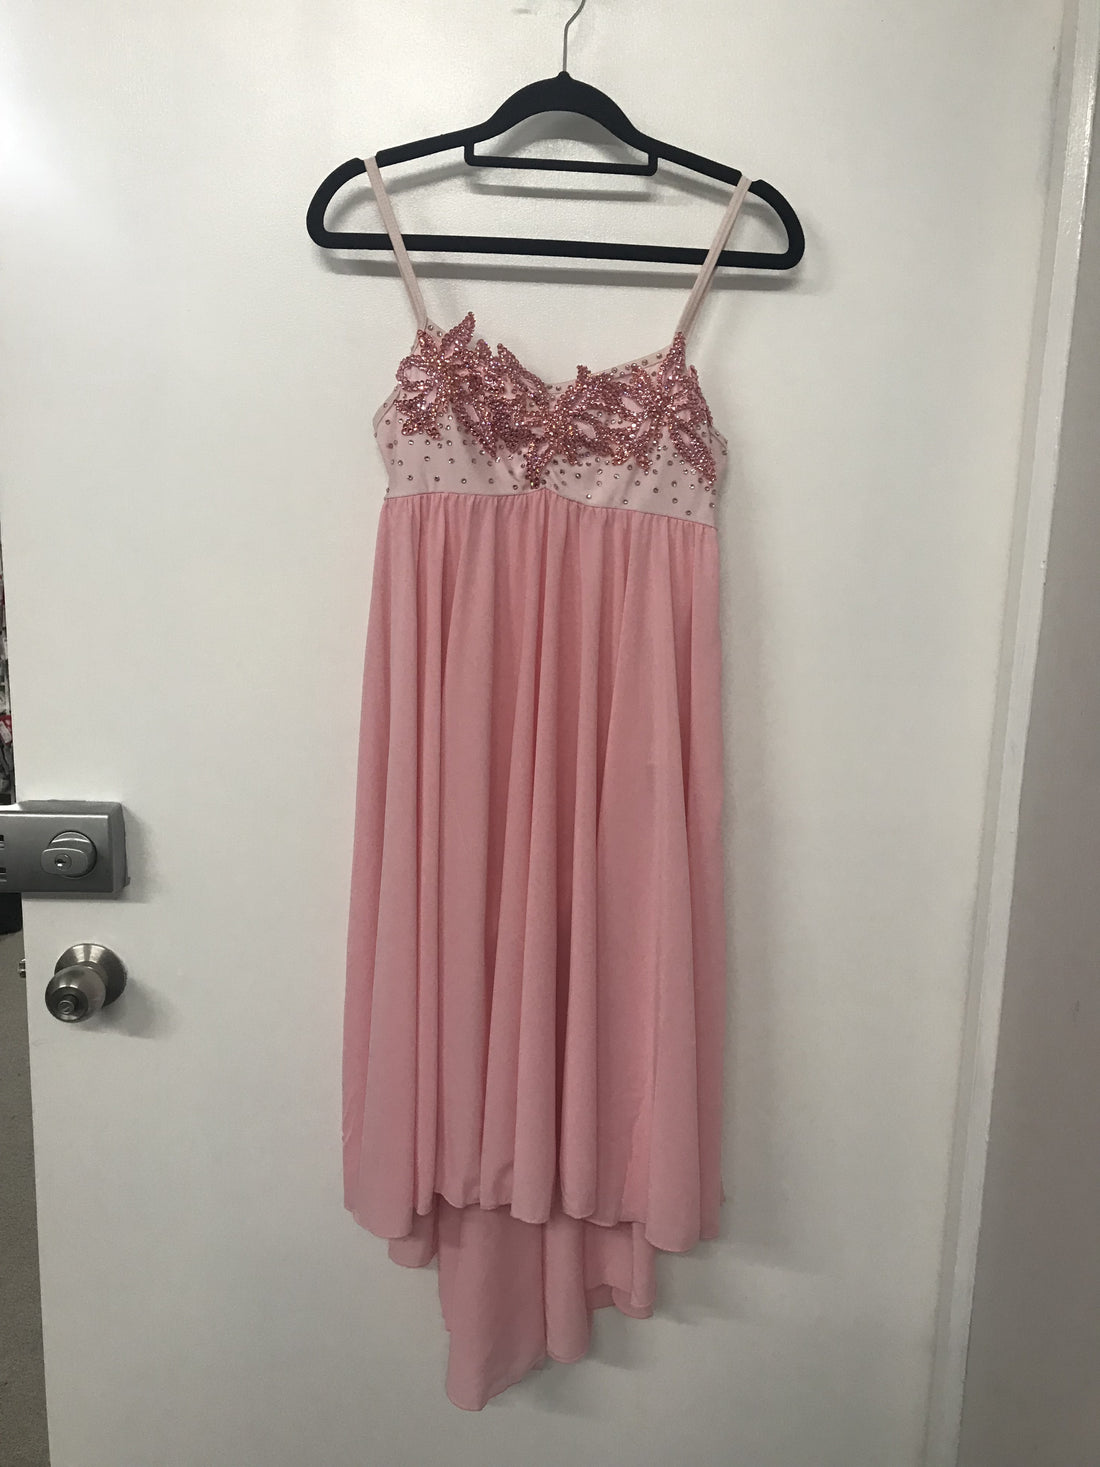 Pale Pink Princess Chiffon Dress (Adult Large)